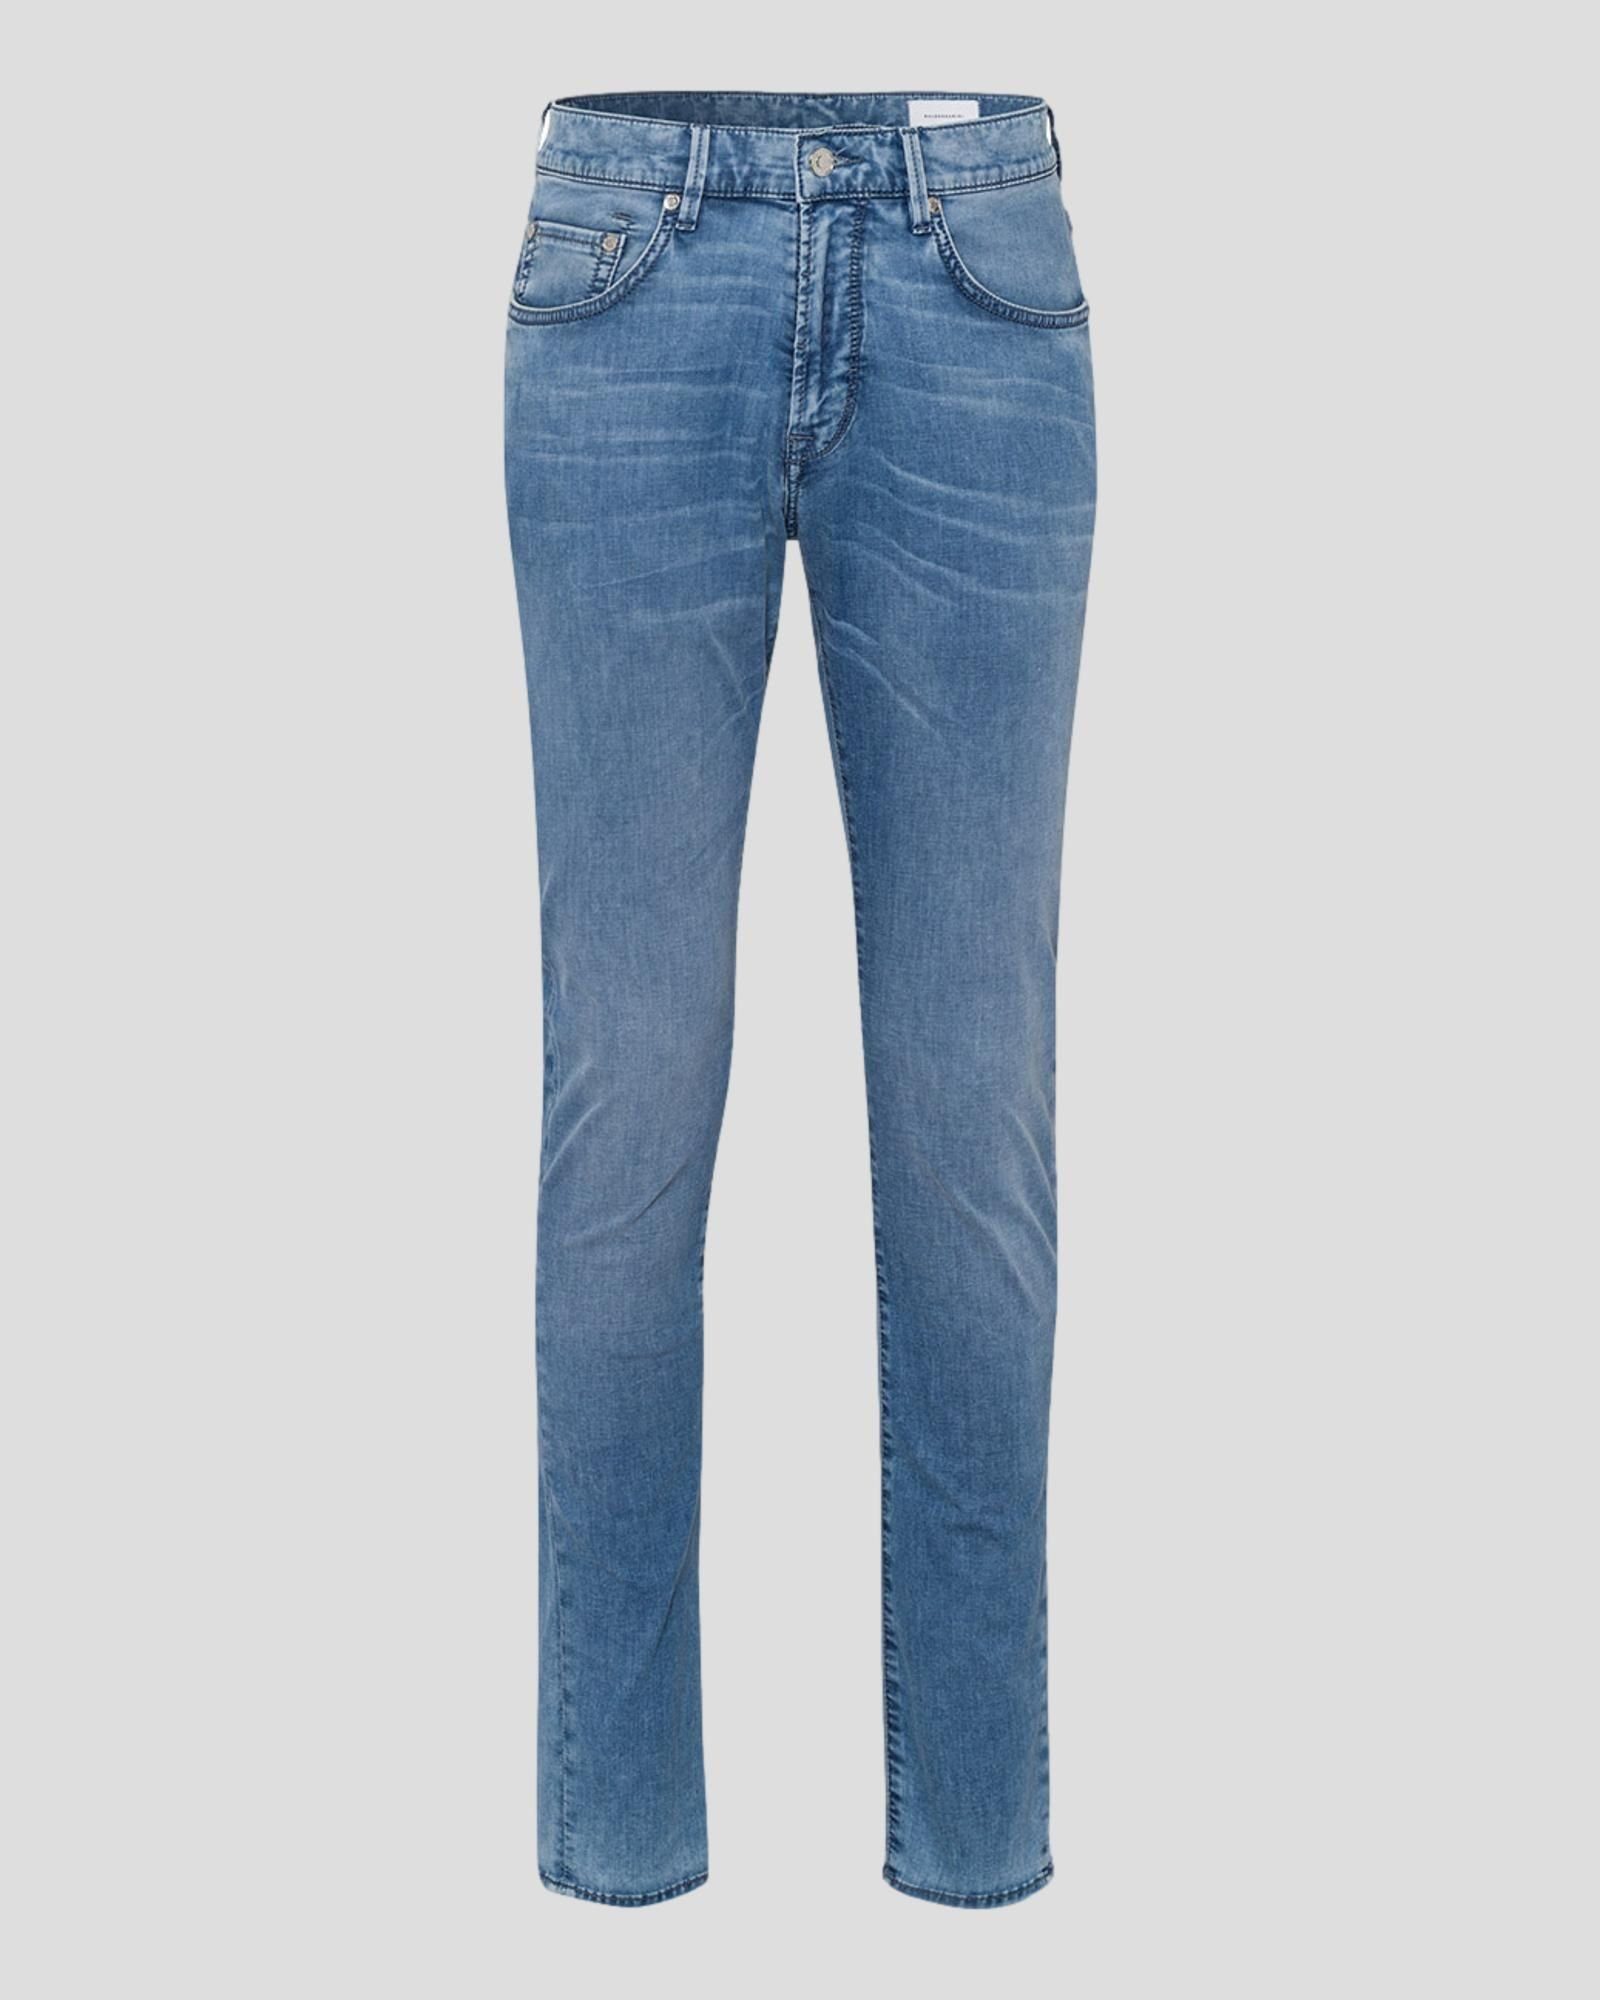 BALDESSARINI 5-Pocket-Jeans 6854 sky blue used b